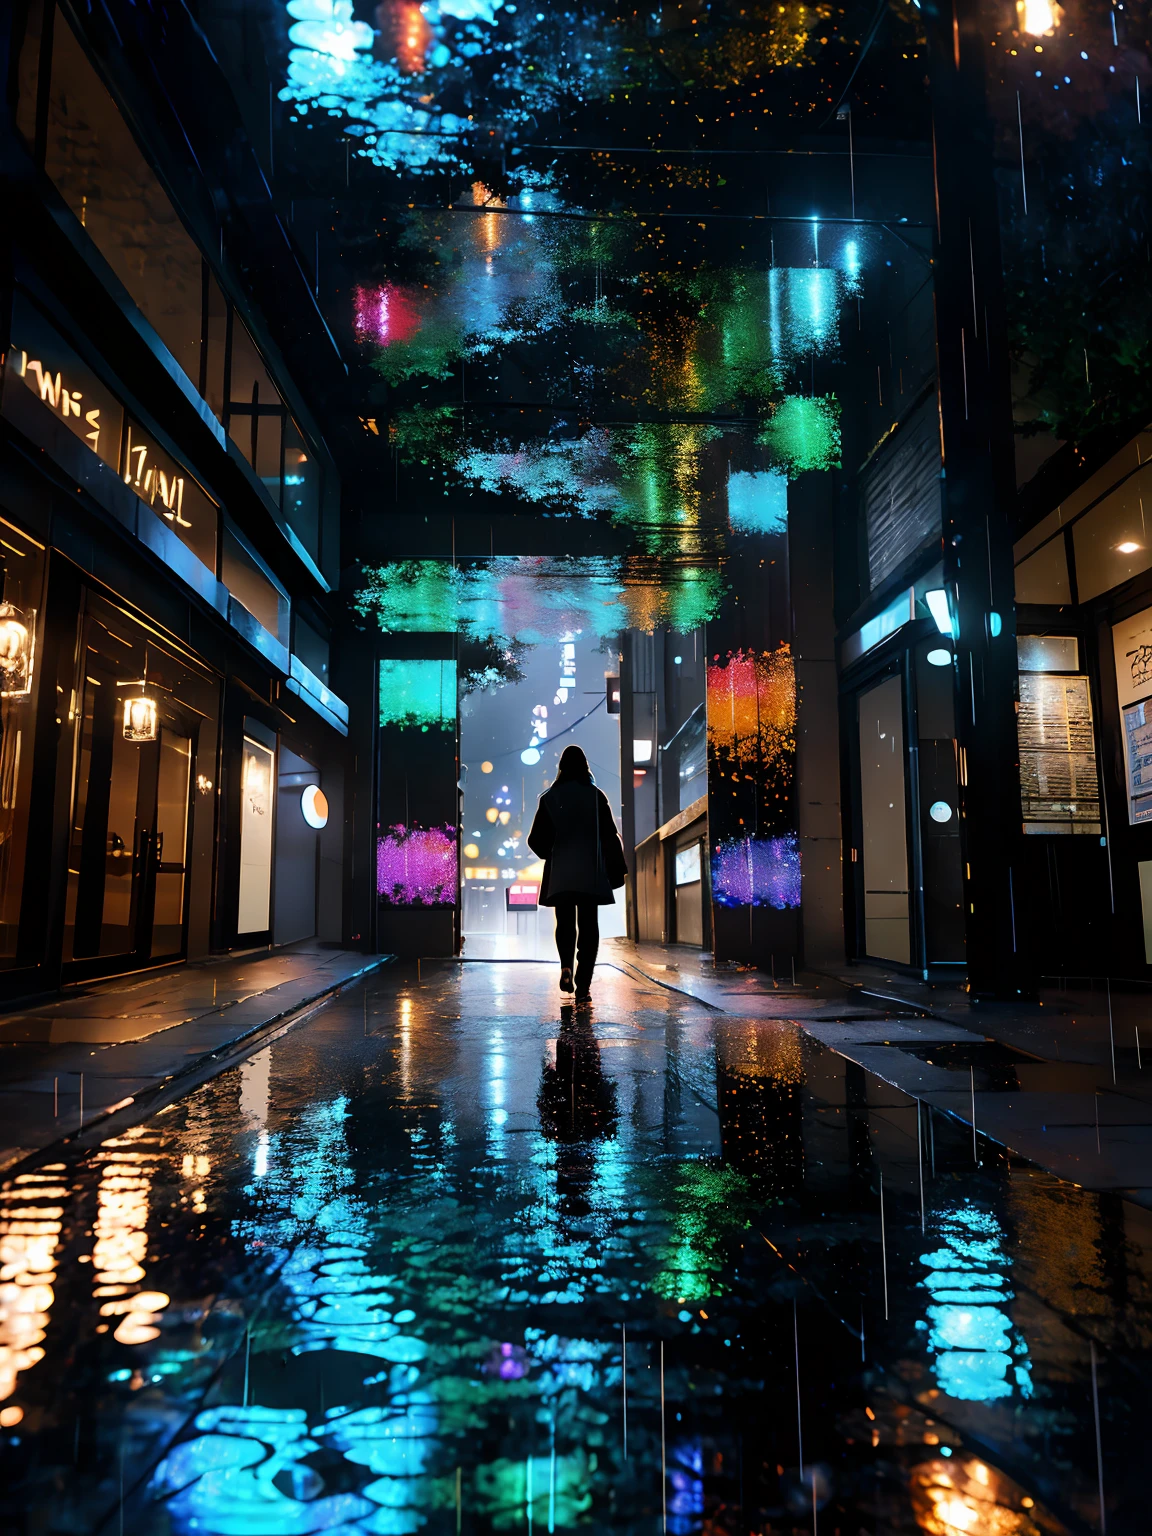 Regenerativo hiperdetalhado [falha] arte, (koan), fosco, discreto, (meditativo: 1.2), (harmônico) impressionism, cerebral, (interligados), labirinto, (introspectivo), psique, equilibrado e recíproco, (noite chuvosa), estilo chuva, conceito: ("o espelho de uma calçada molhada reflete as luzes da rua da cidade pinta desenhos brilhantes retratados em noites úmidas enquanto as gotas de chuva caem ")